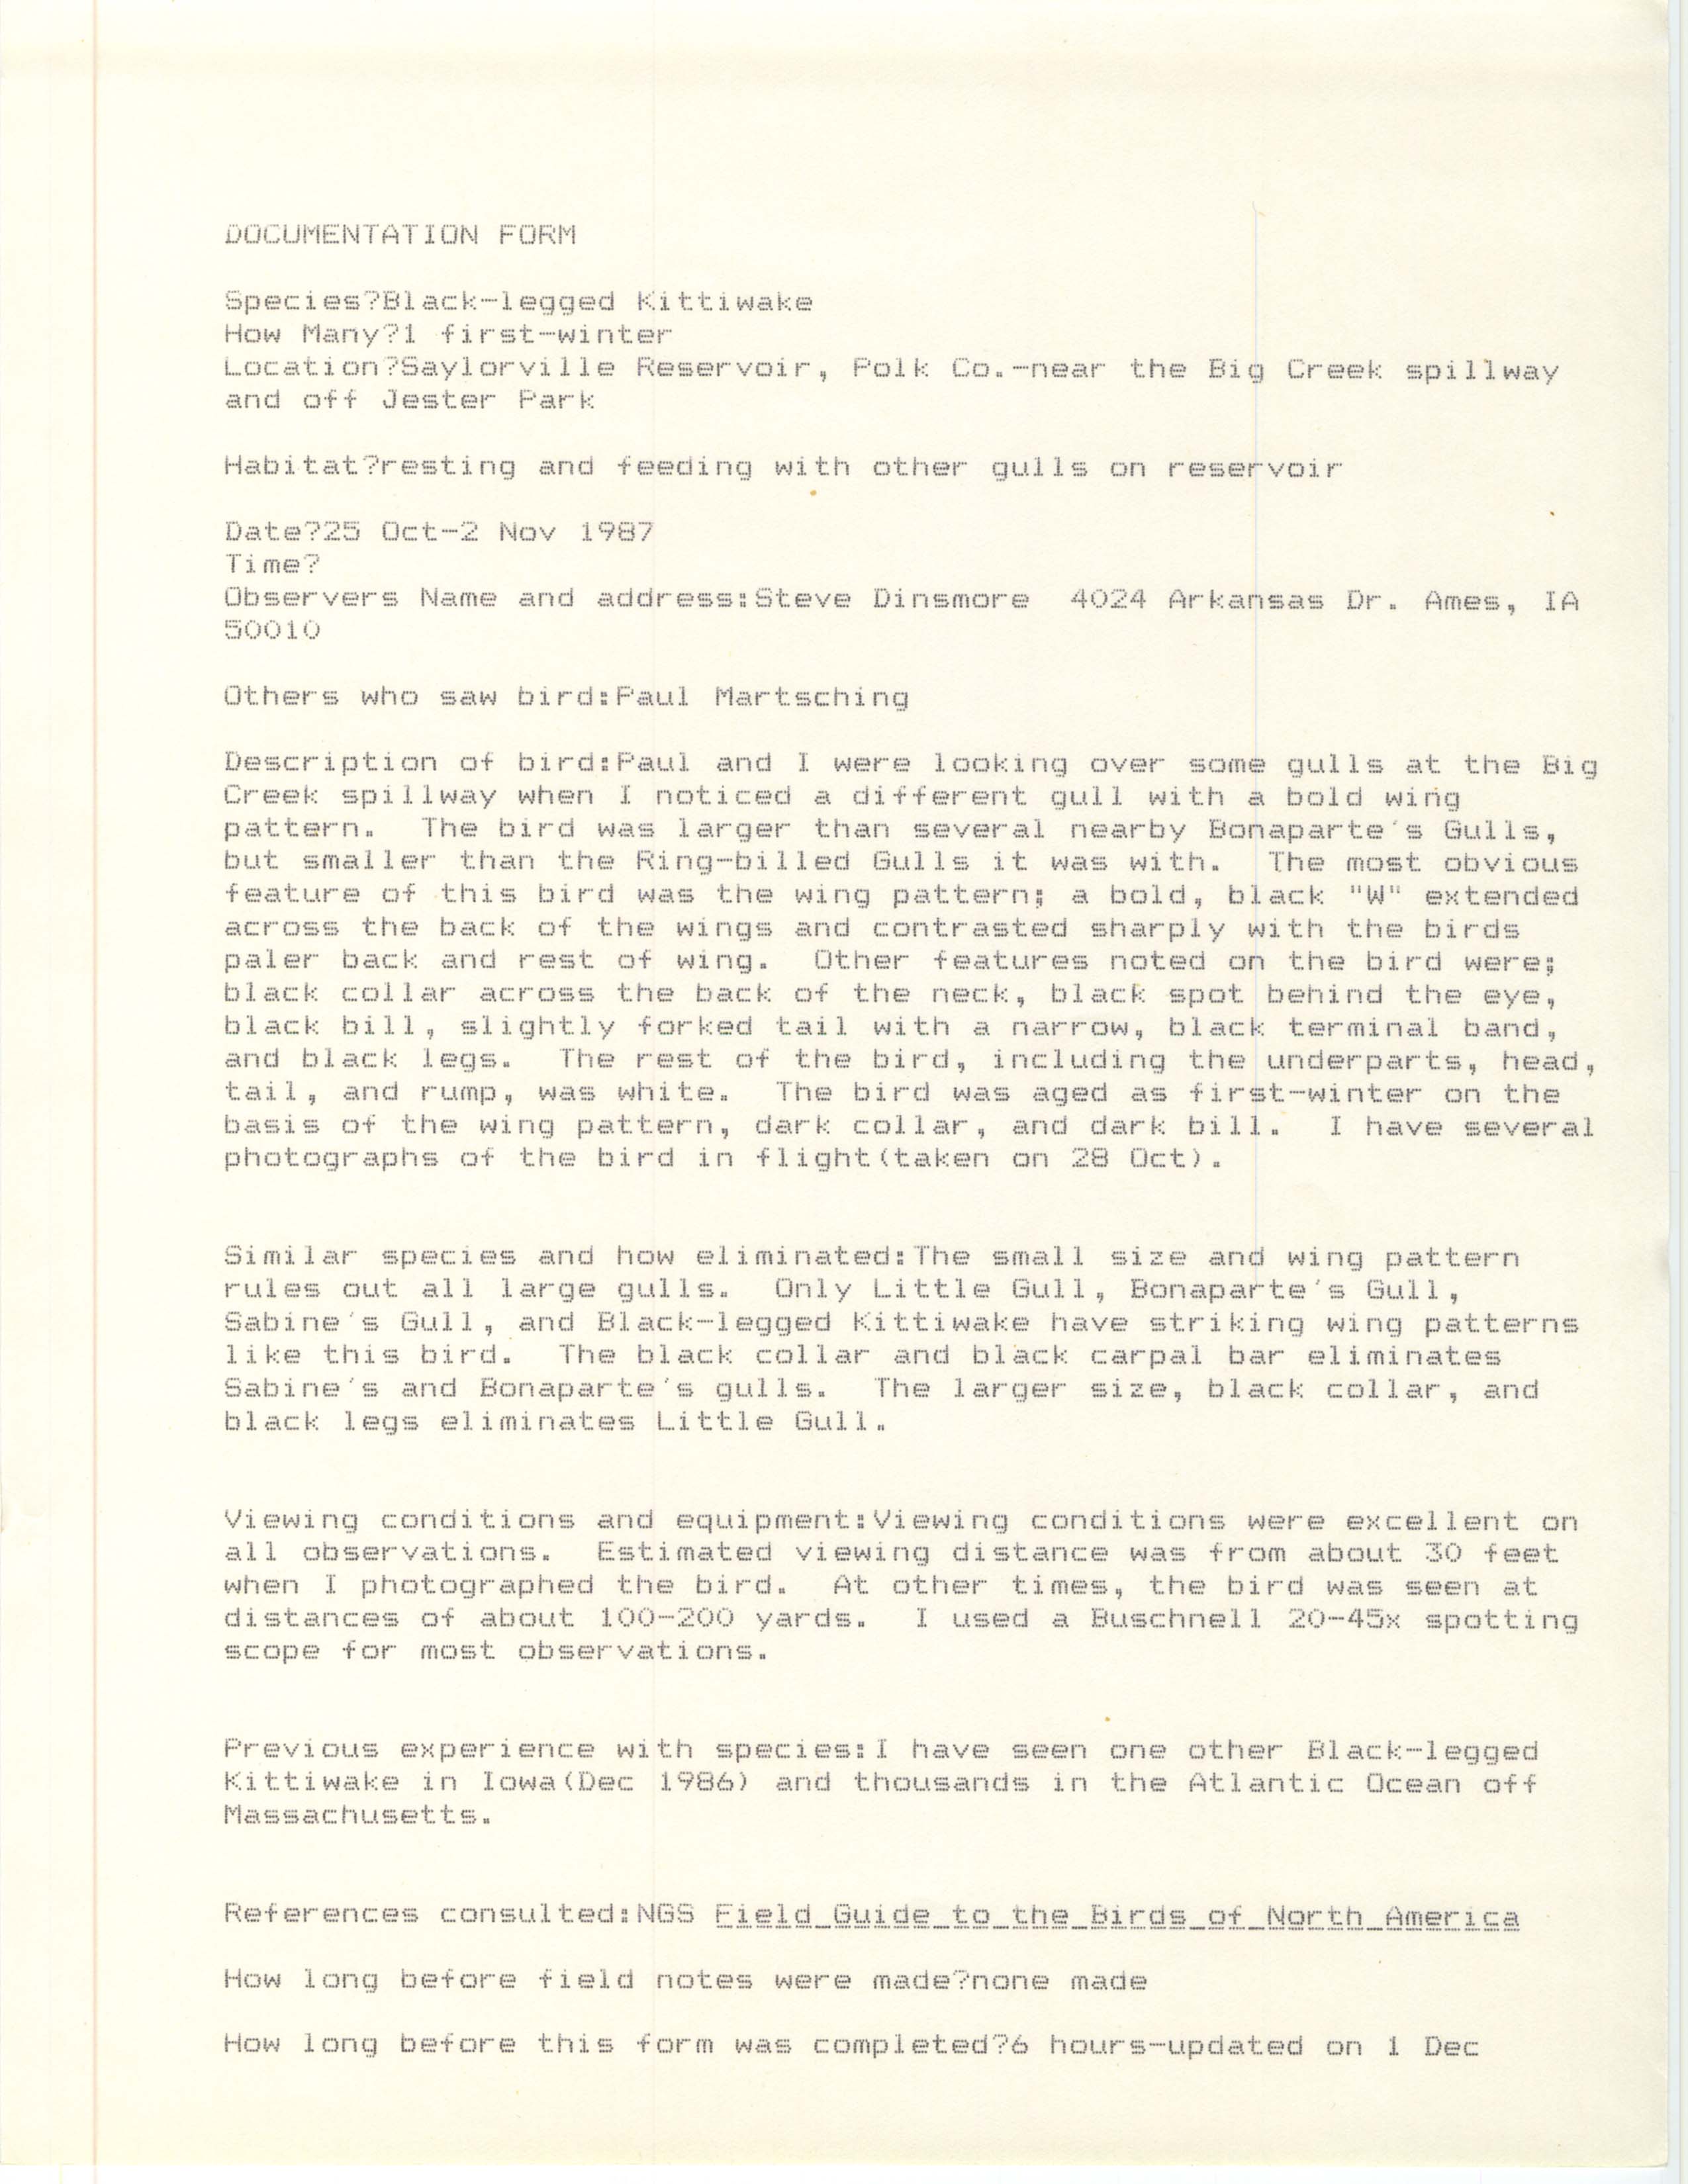 Rare bird documentation form for Black-legged Kittiwake at Saylorville Reservoir in 1987